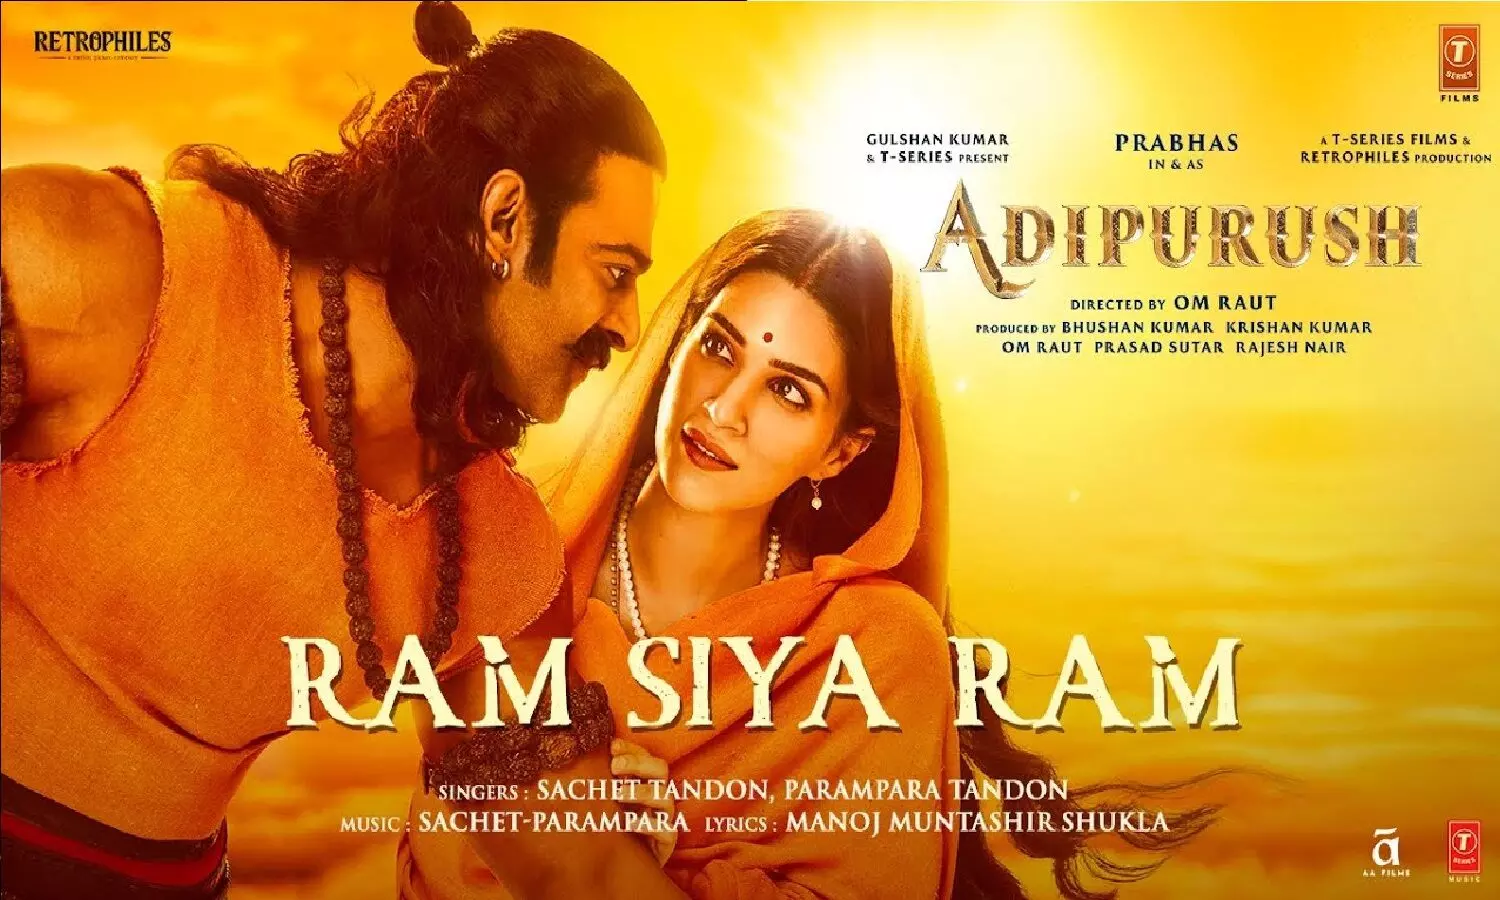 Adipurush का Ram Siya Ram Song लॉन्च! यहां देखें